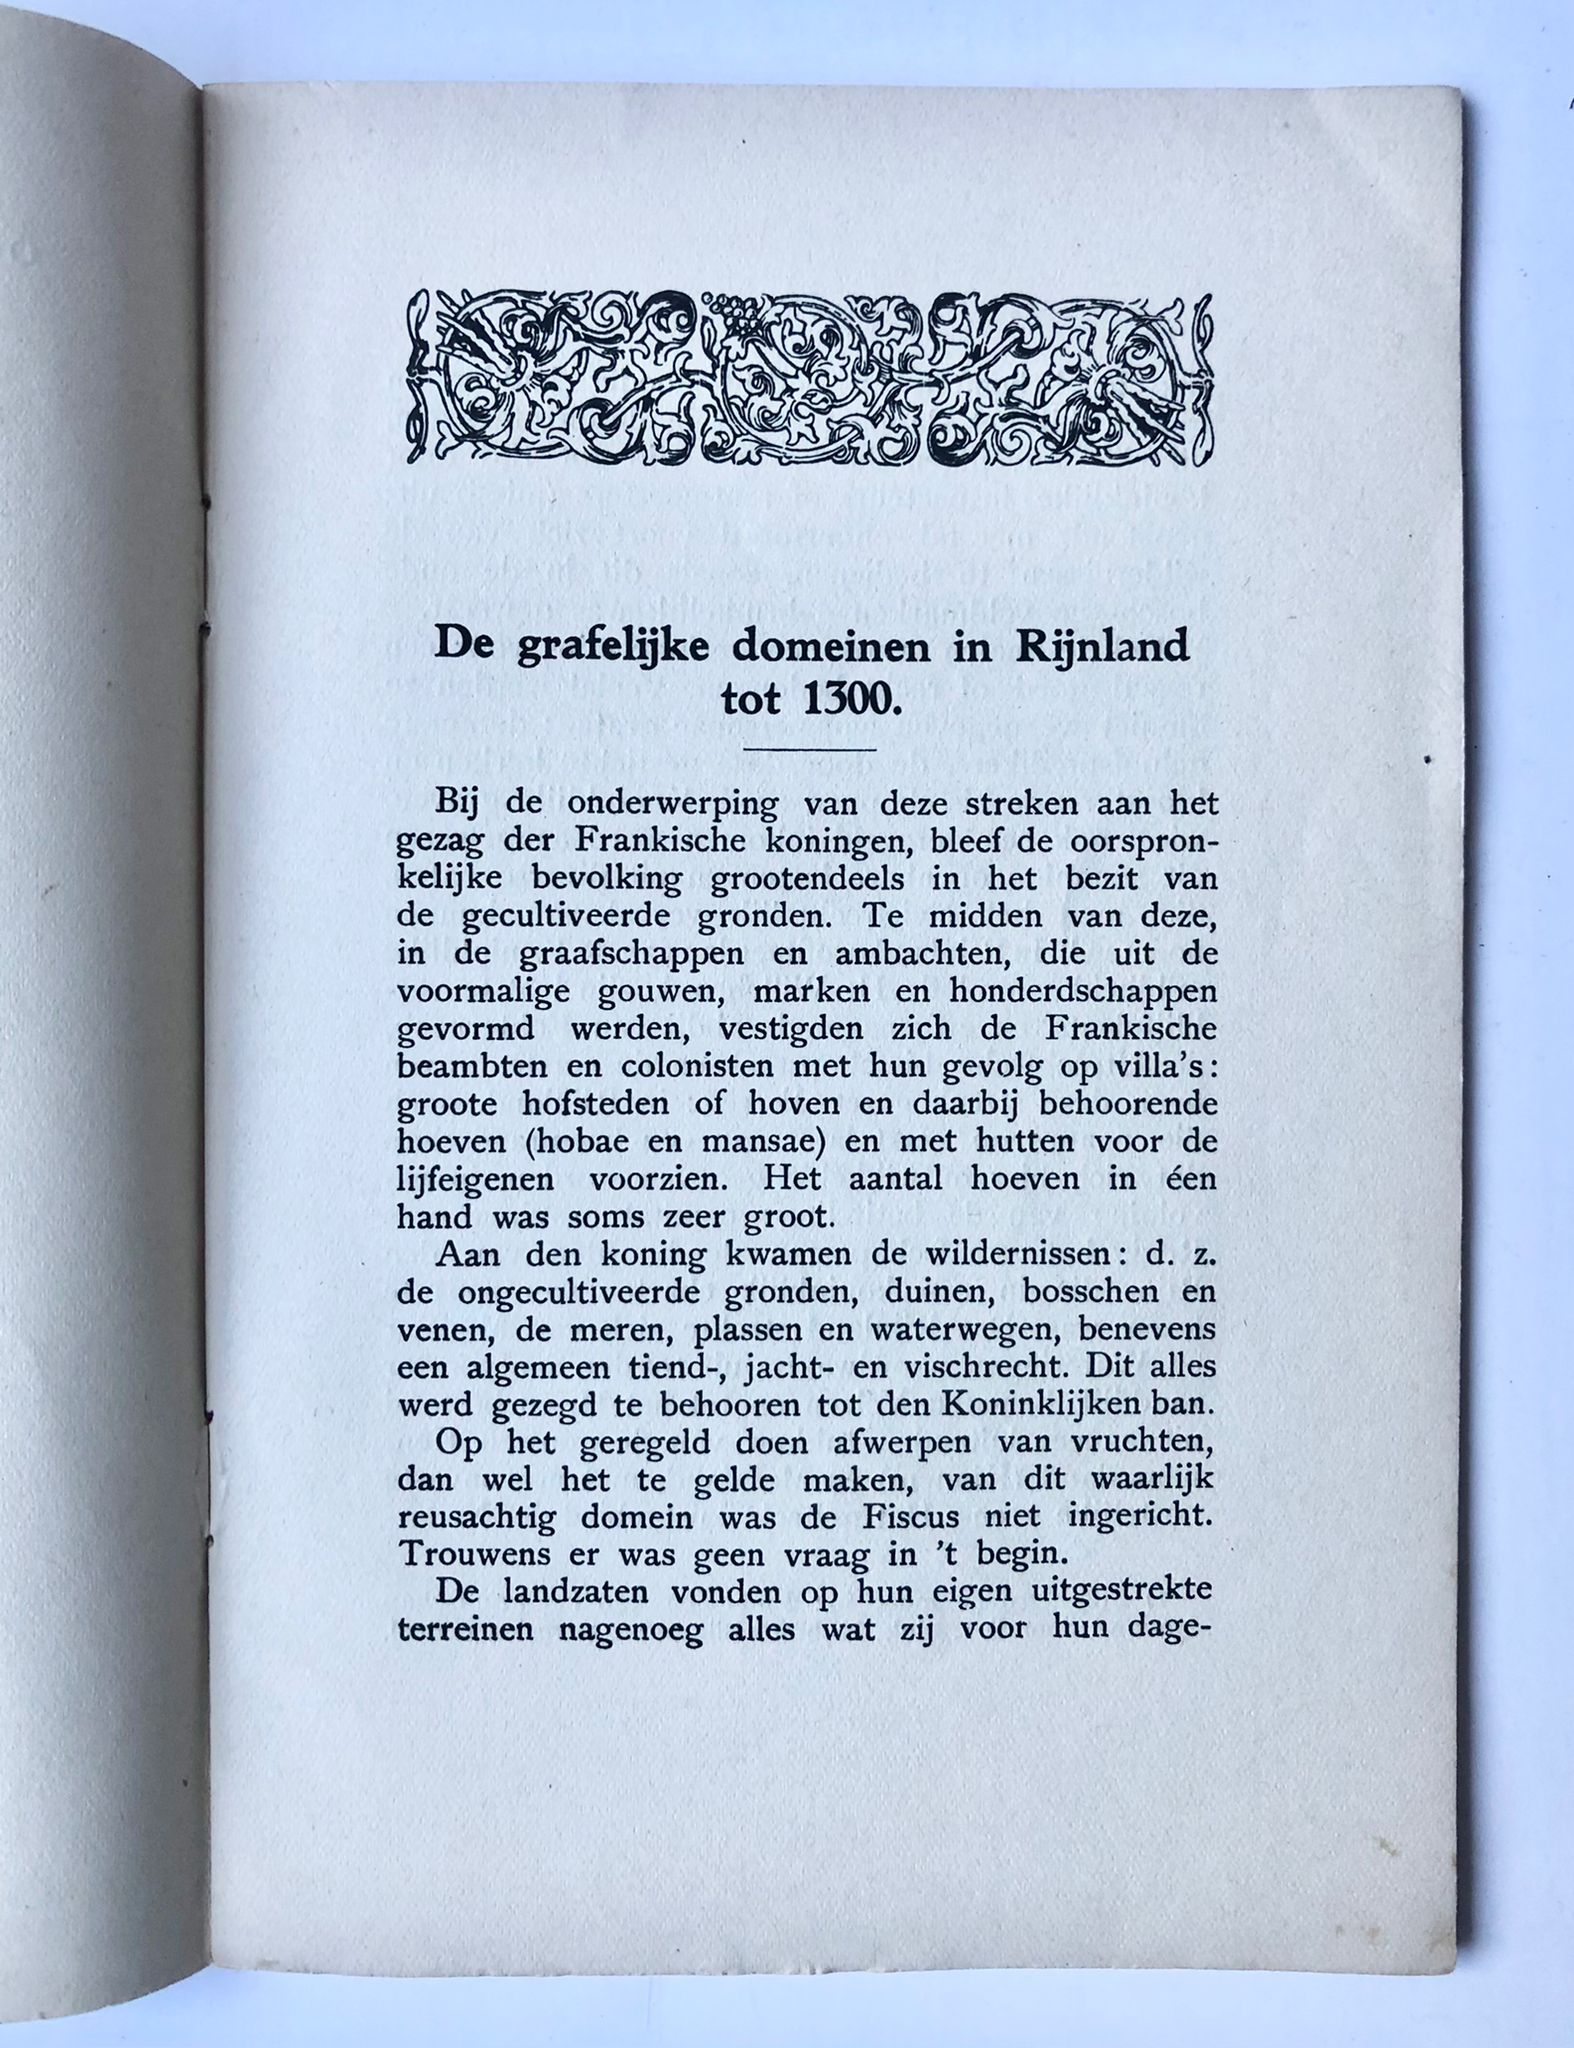 [Rijnland, Zuid-Holland] De grafelijke domeinen in Rhijnland tot 1300, Overgedrukt uit het Leidsche Jaarboekje 1917, Door F. Gordon, 95 pp.